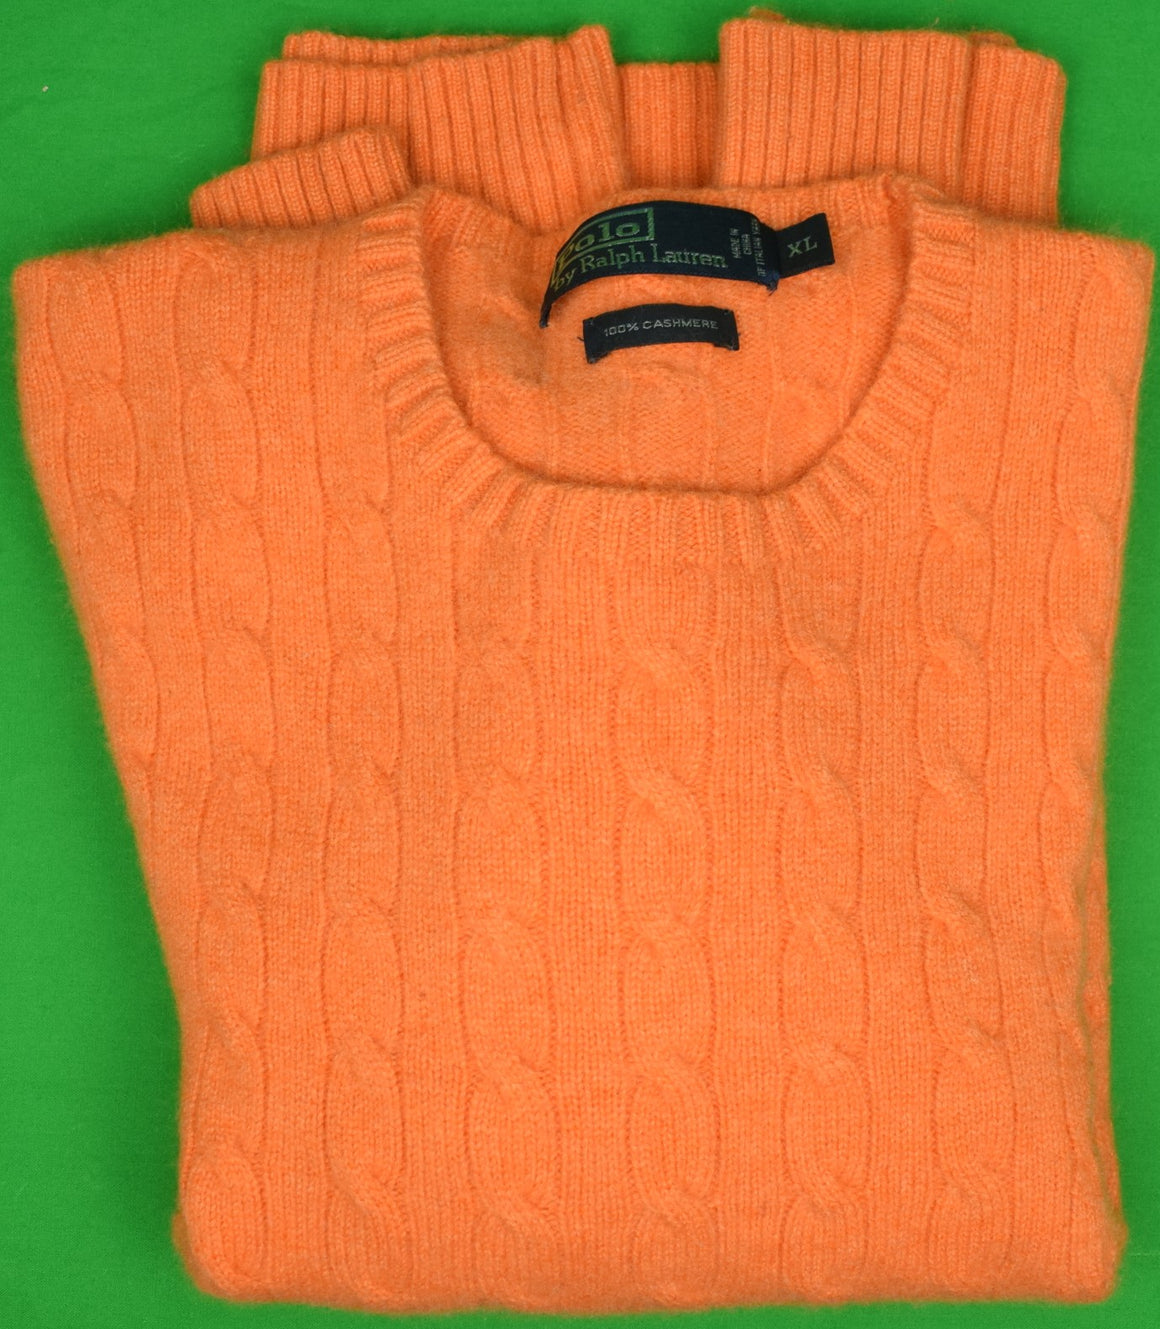 "Polo by Ralph Lauren 100% Cashmere Orange Cable Crewneck Sweater" Sz: XL (SOLD)